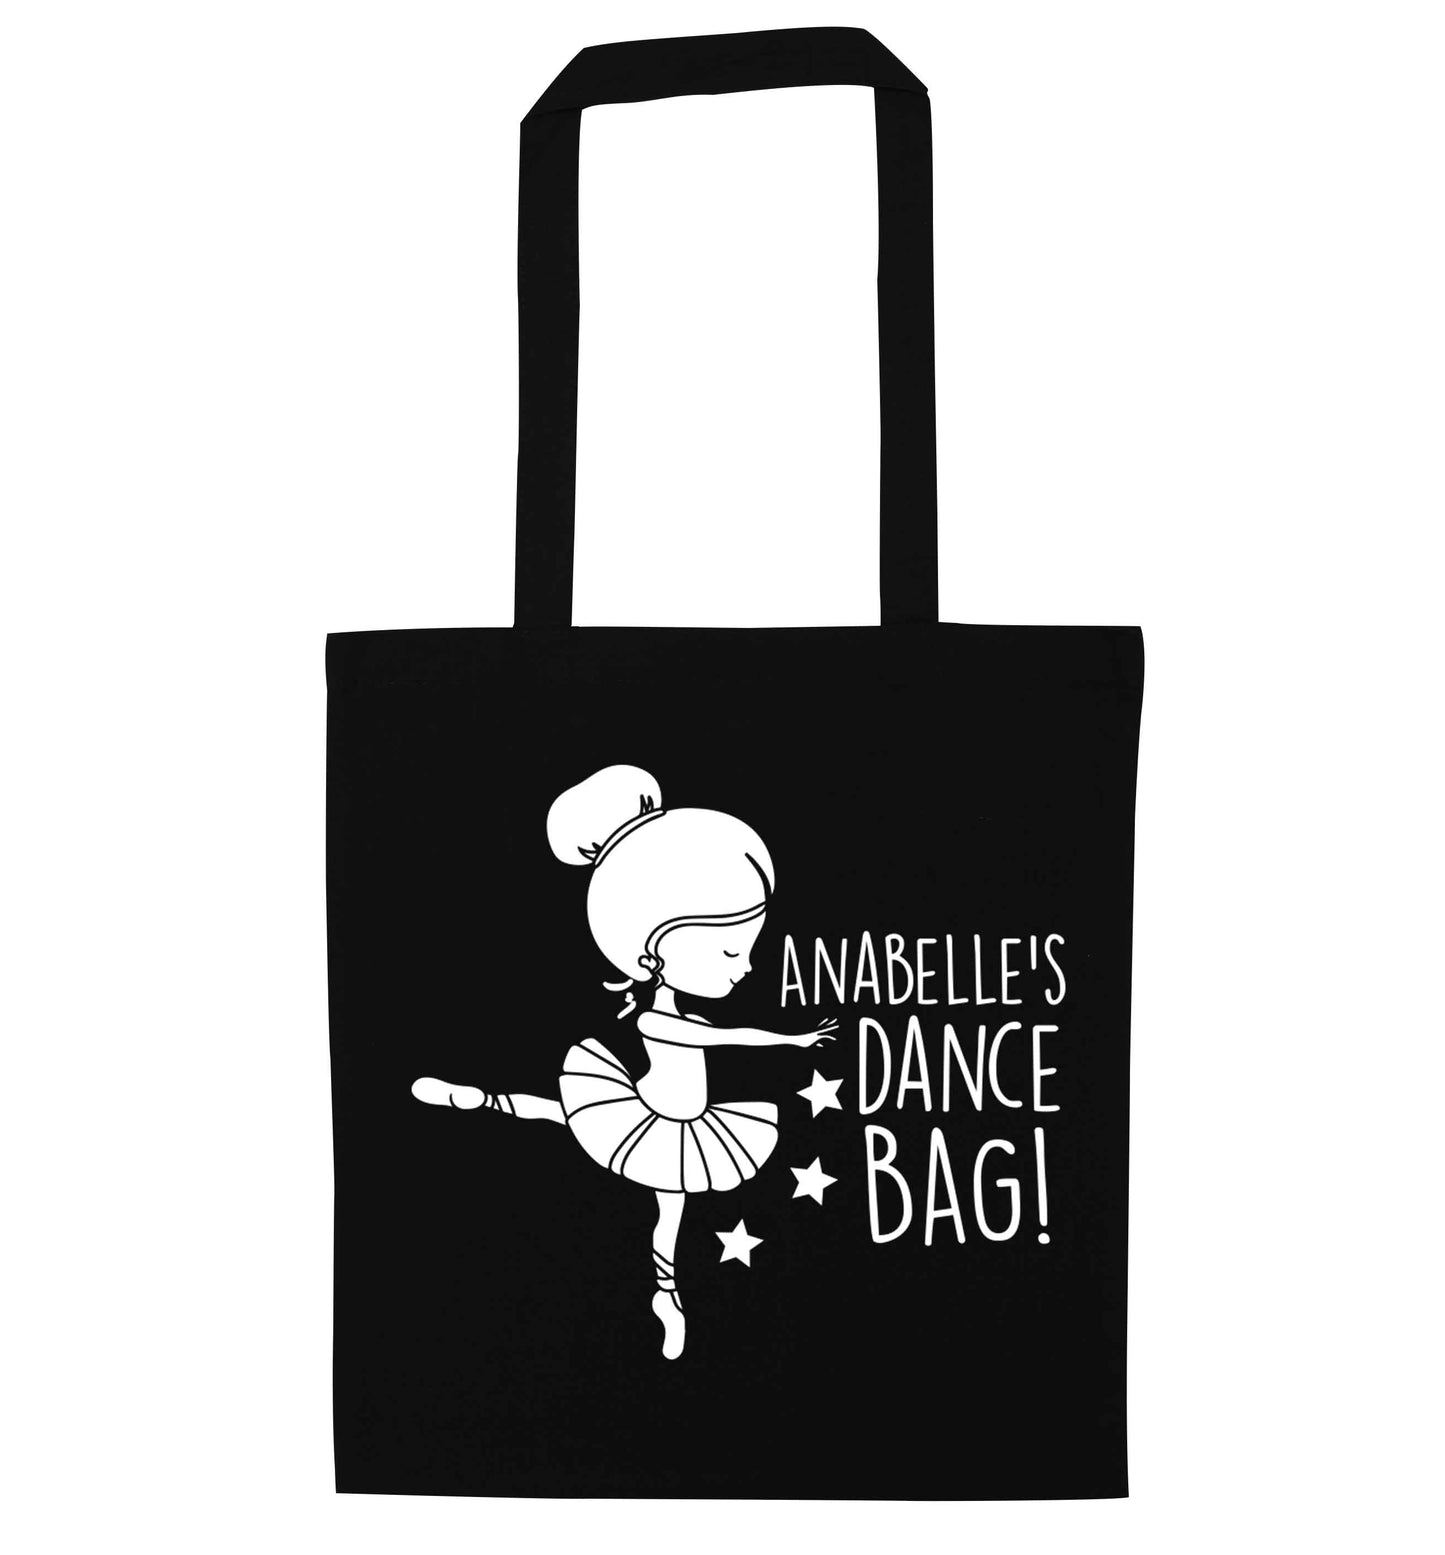 Personalised Ballet Dance Bag black tote bag